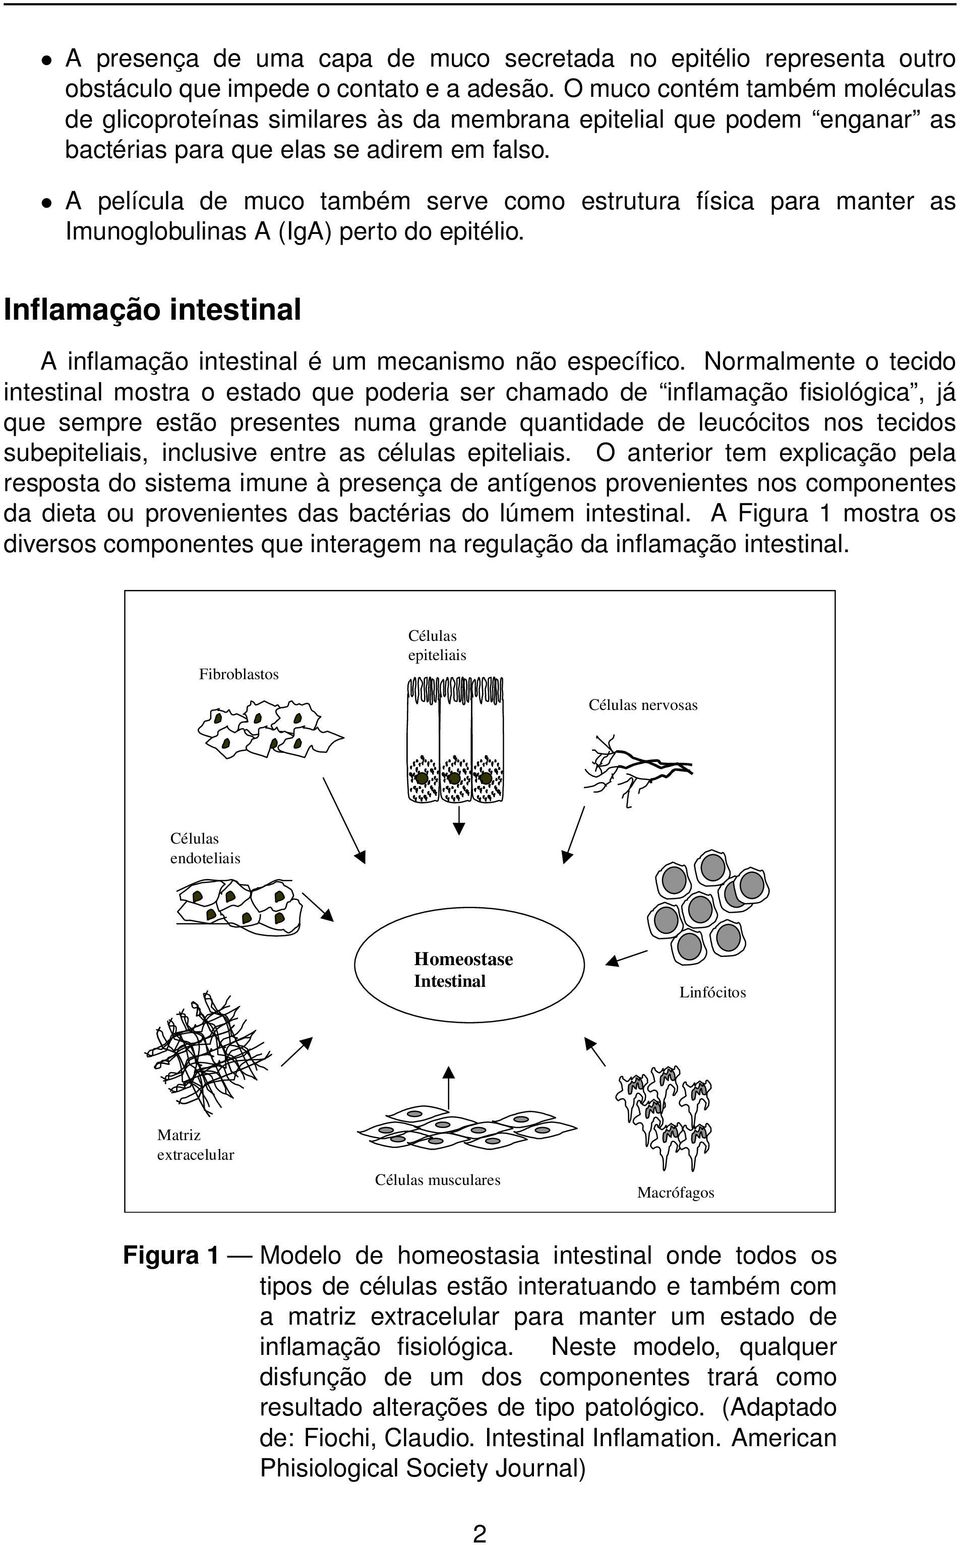 A película de muco também serve como estrutura física para manter as Imunoglobulinas A (IgA) perto do epitélio. Inflamação intestinal A inflamação intestinal é um mecanismo não específico.